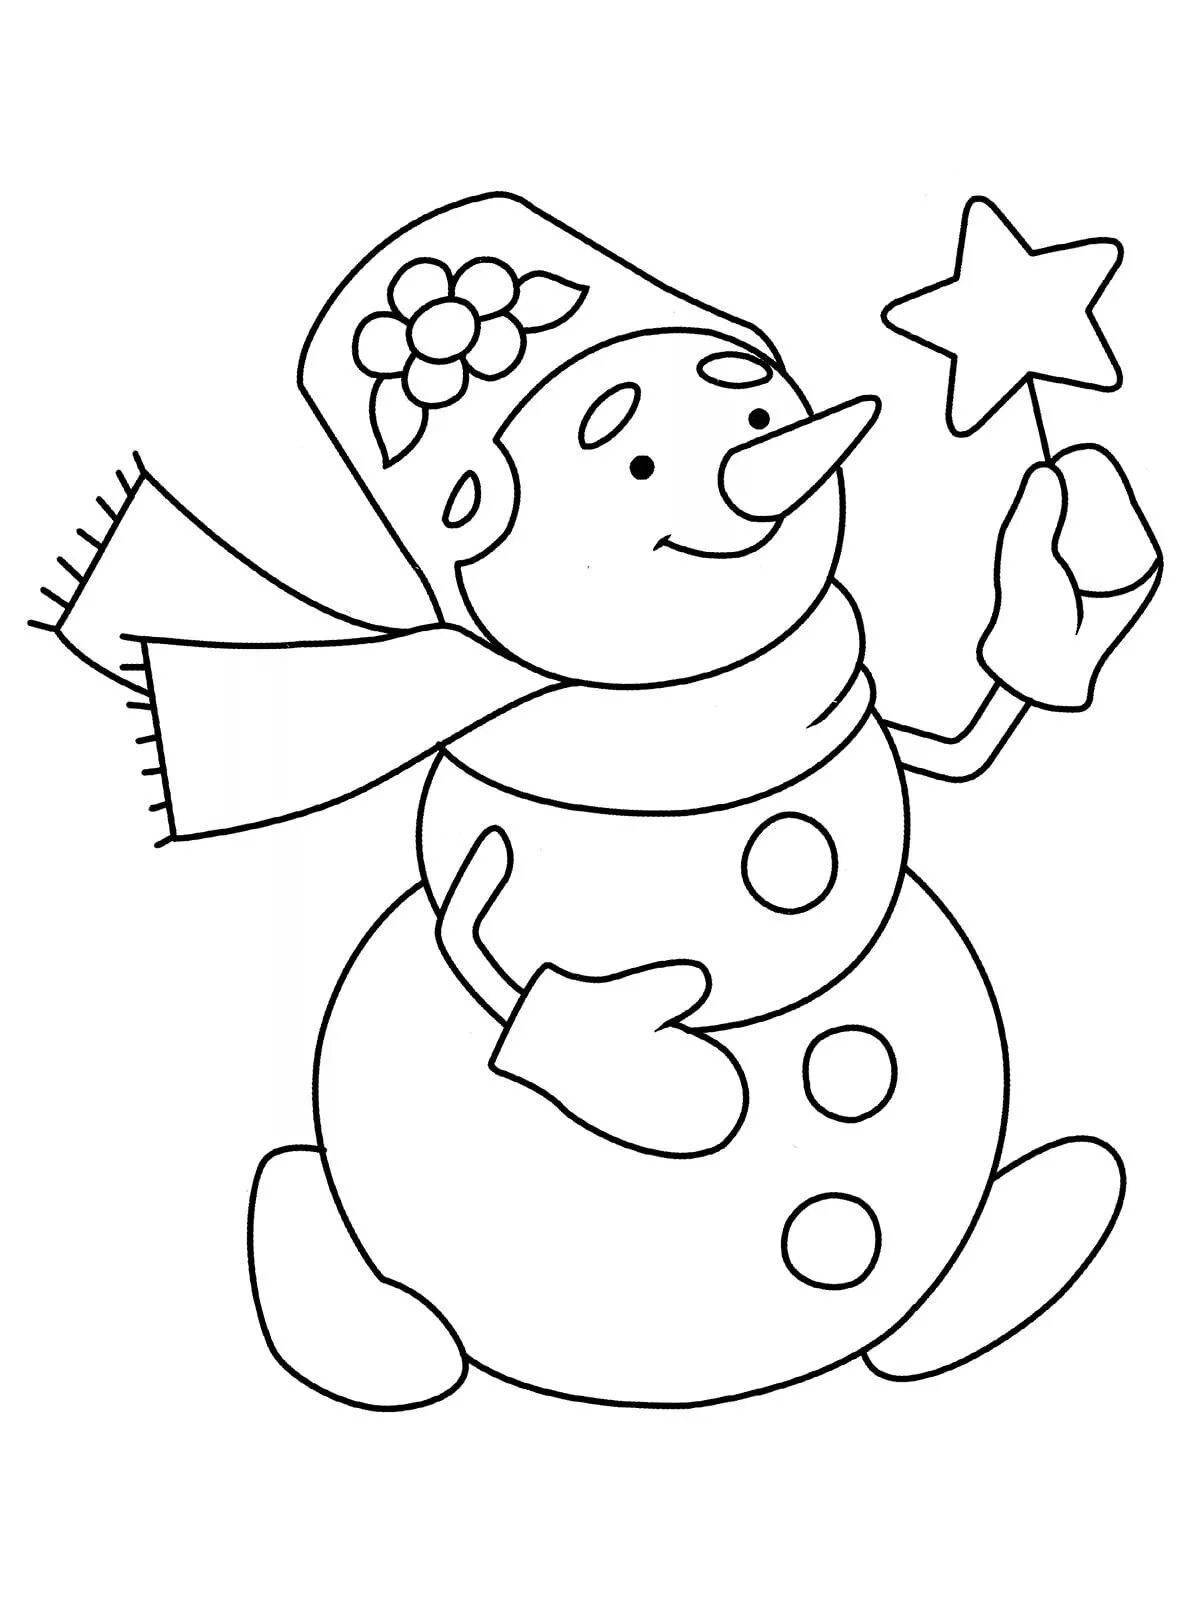 Увлекательная раскраска снеговик для детей 6-7 лет